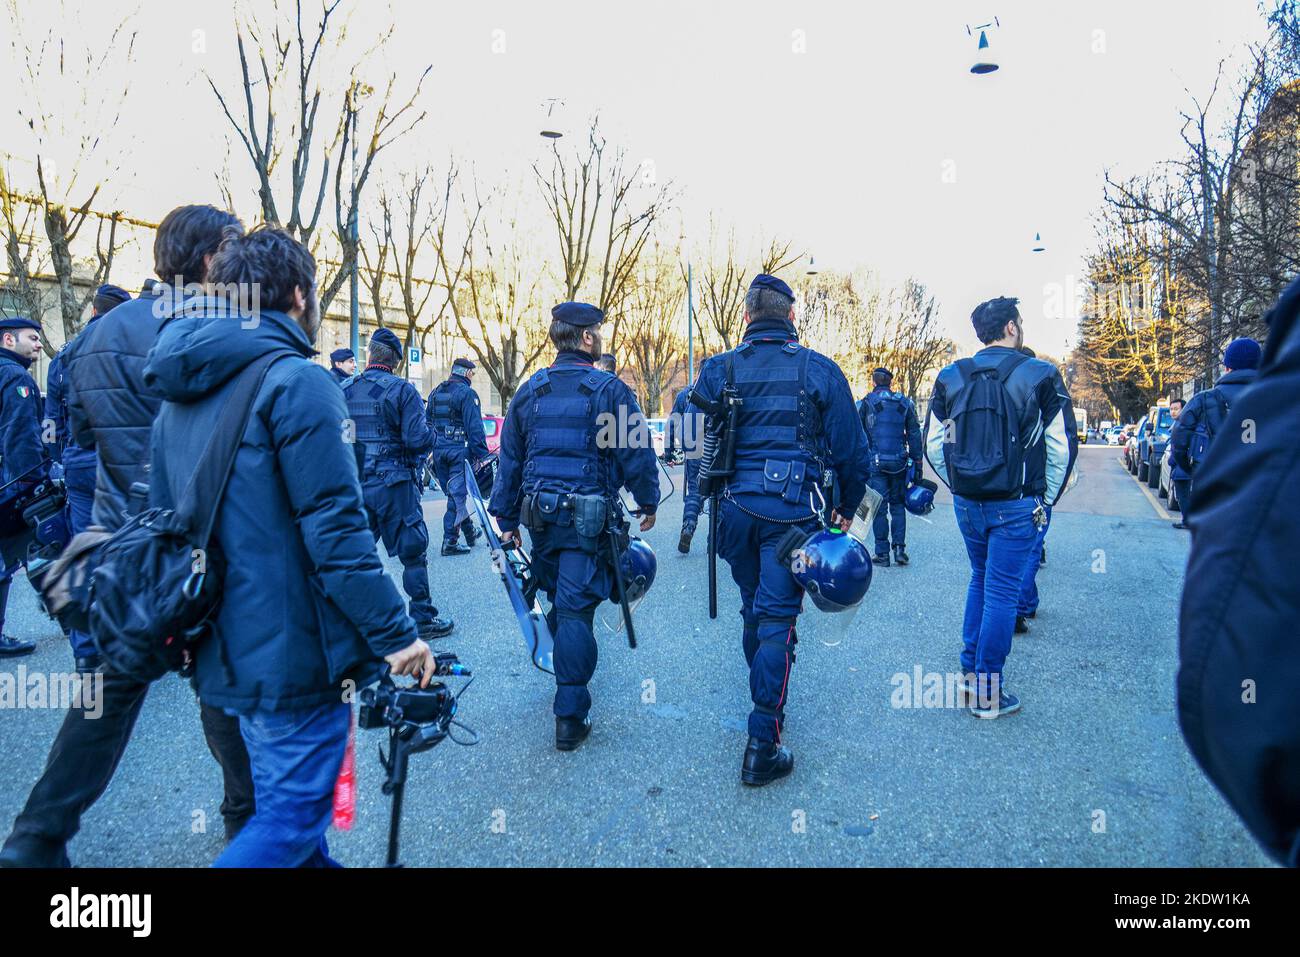 22-02-2014 Milano, Italia. La polizia italiana (Carabinieri) in barbatone ha portato la strada prima di una manifestazione anarchica a Milano. L'elicottero vola Foto Stock